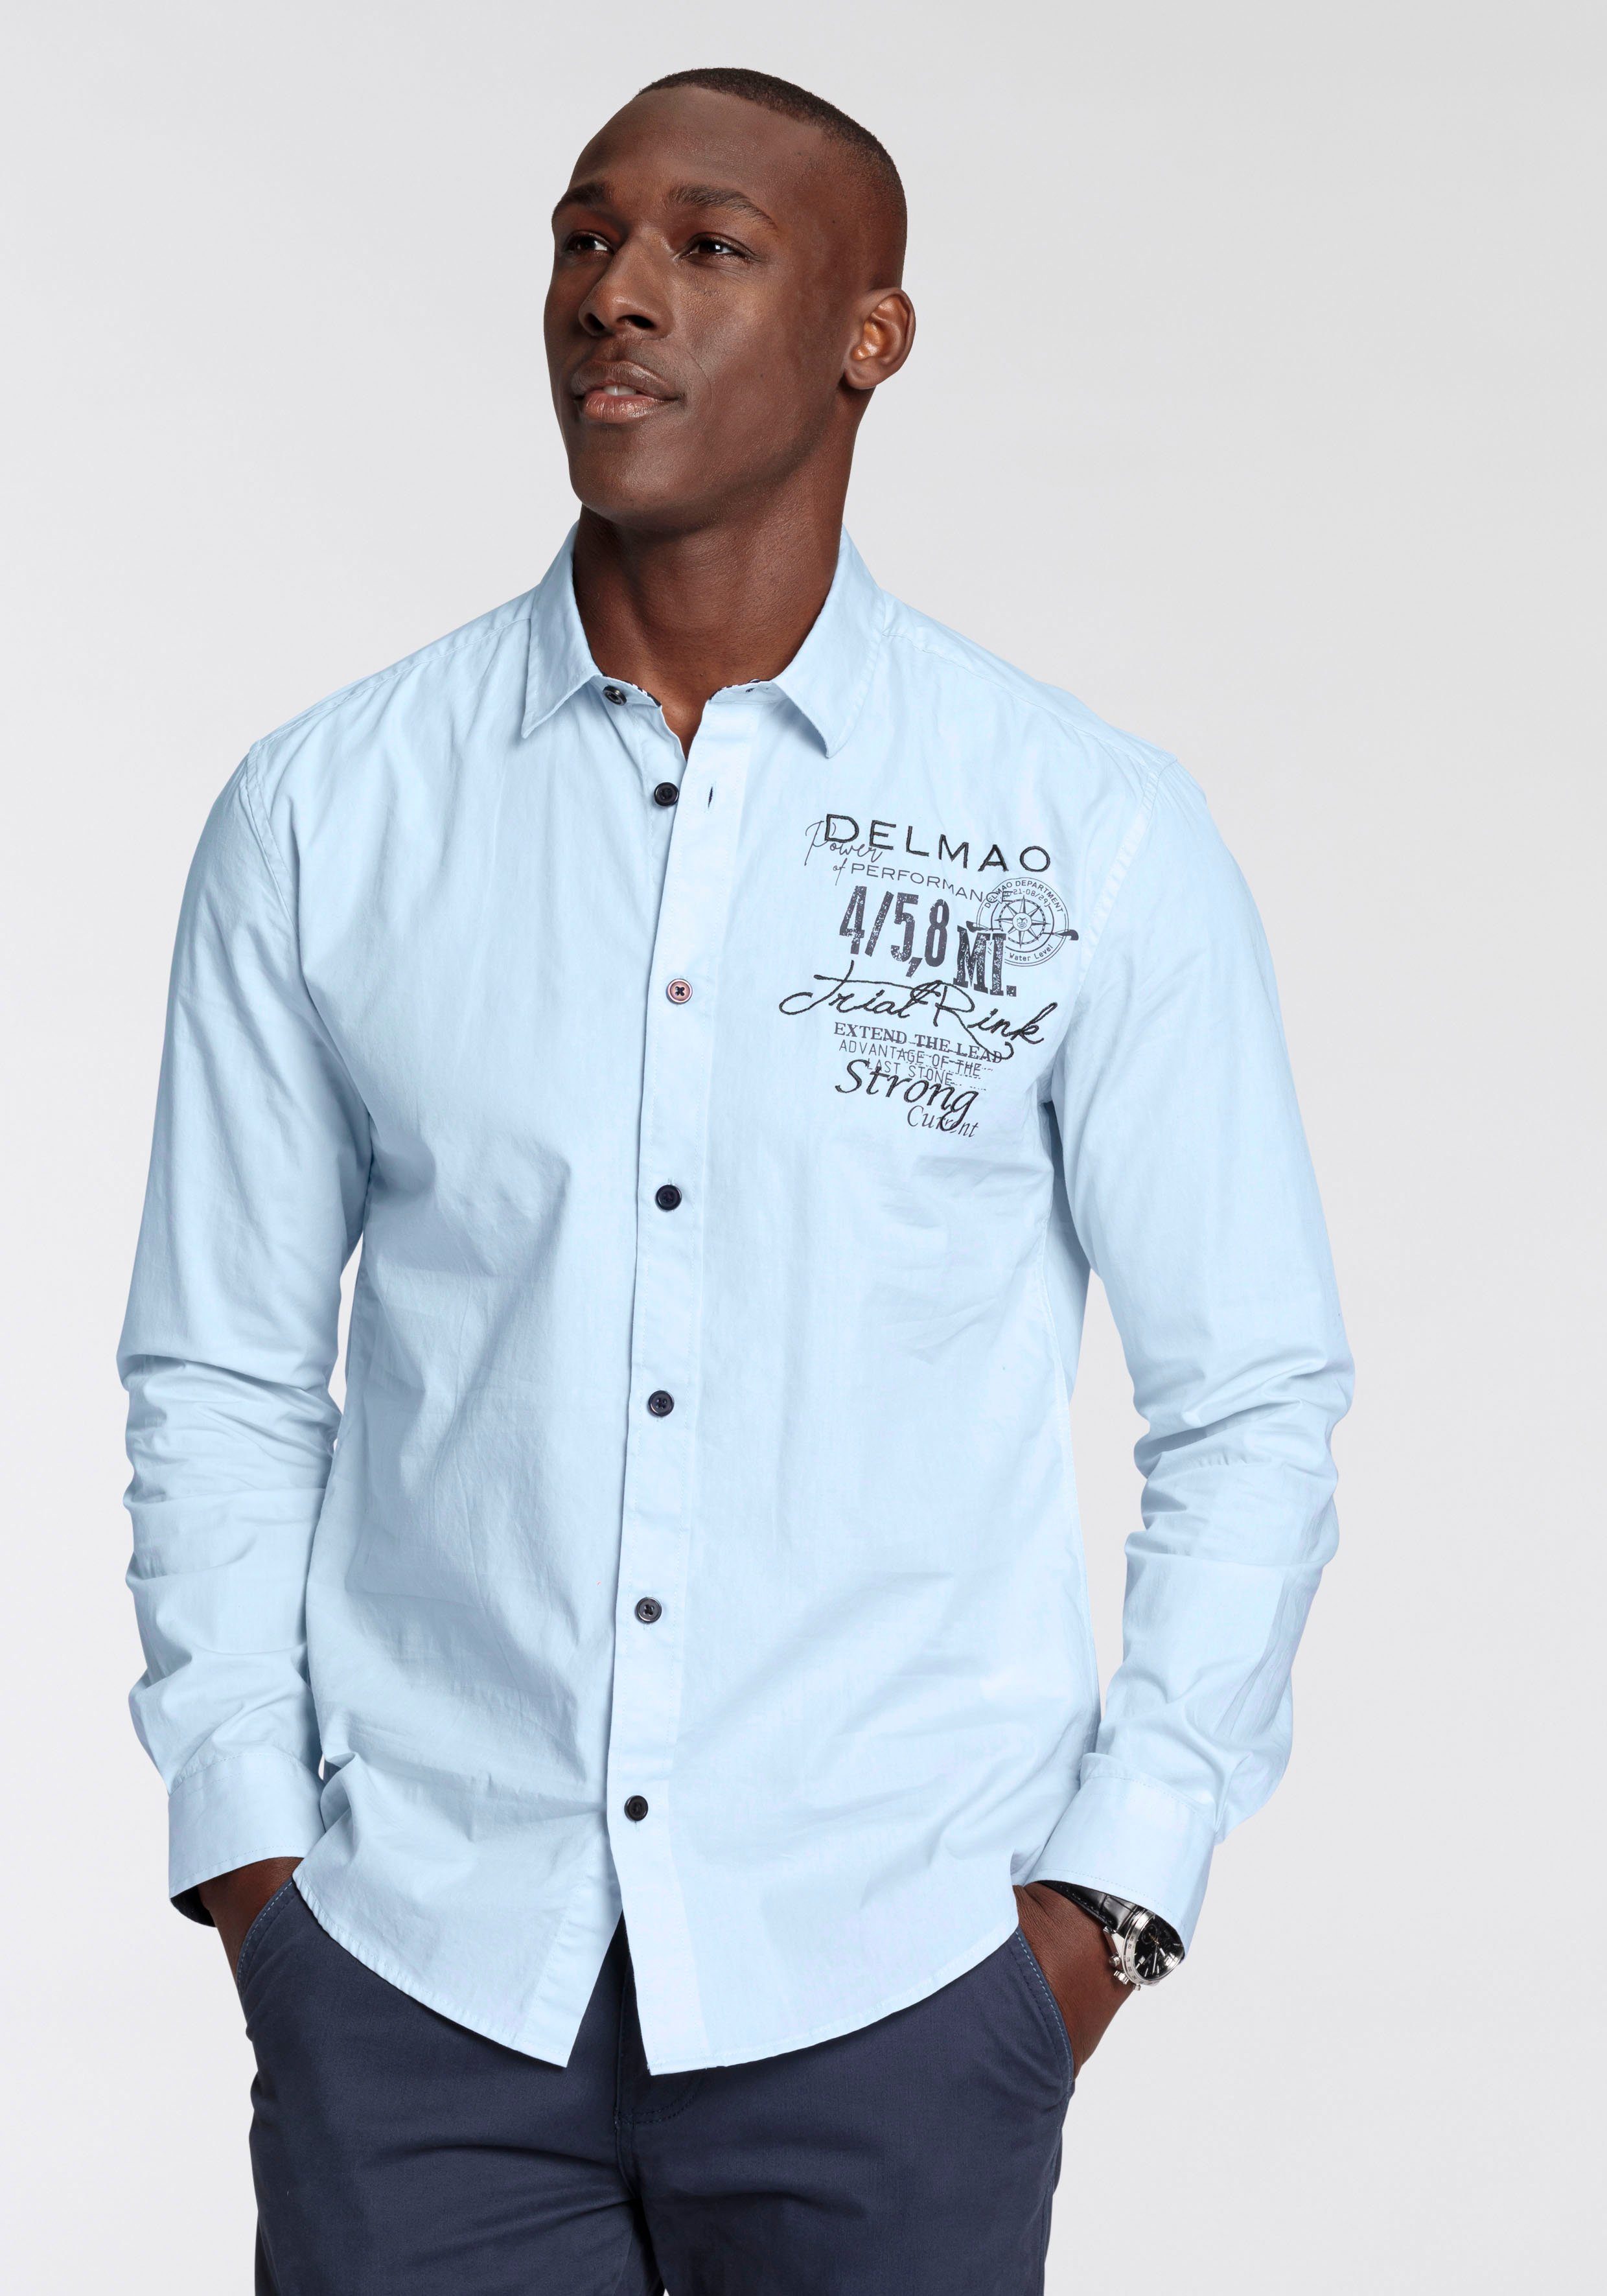 Hemden für Herren kaufen » Hemden von Top Marken | OTTO